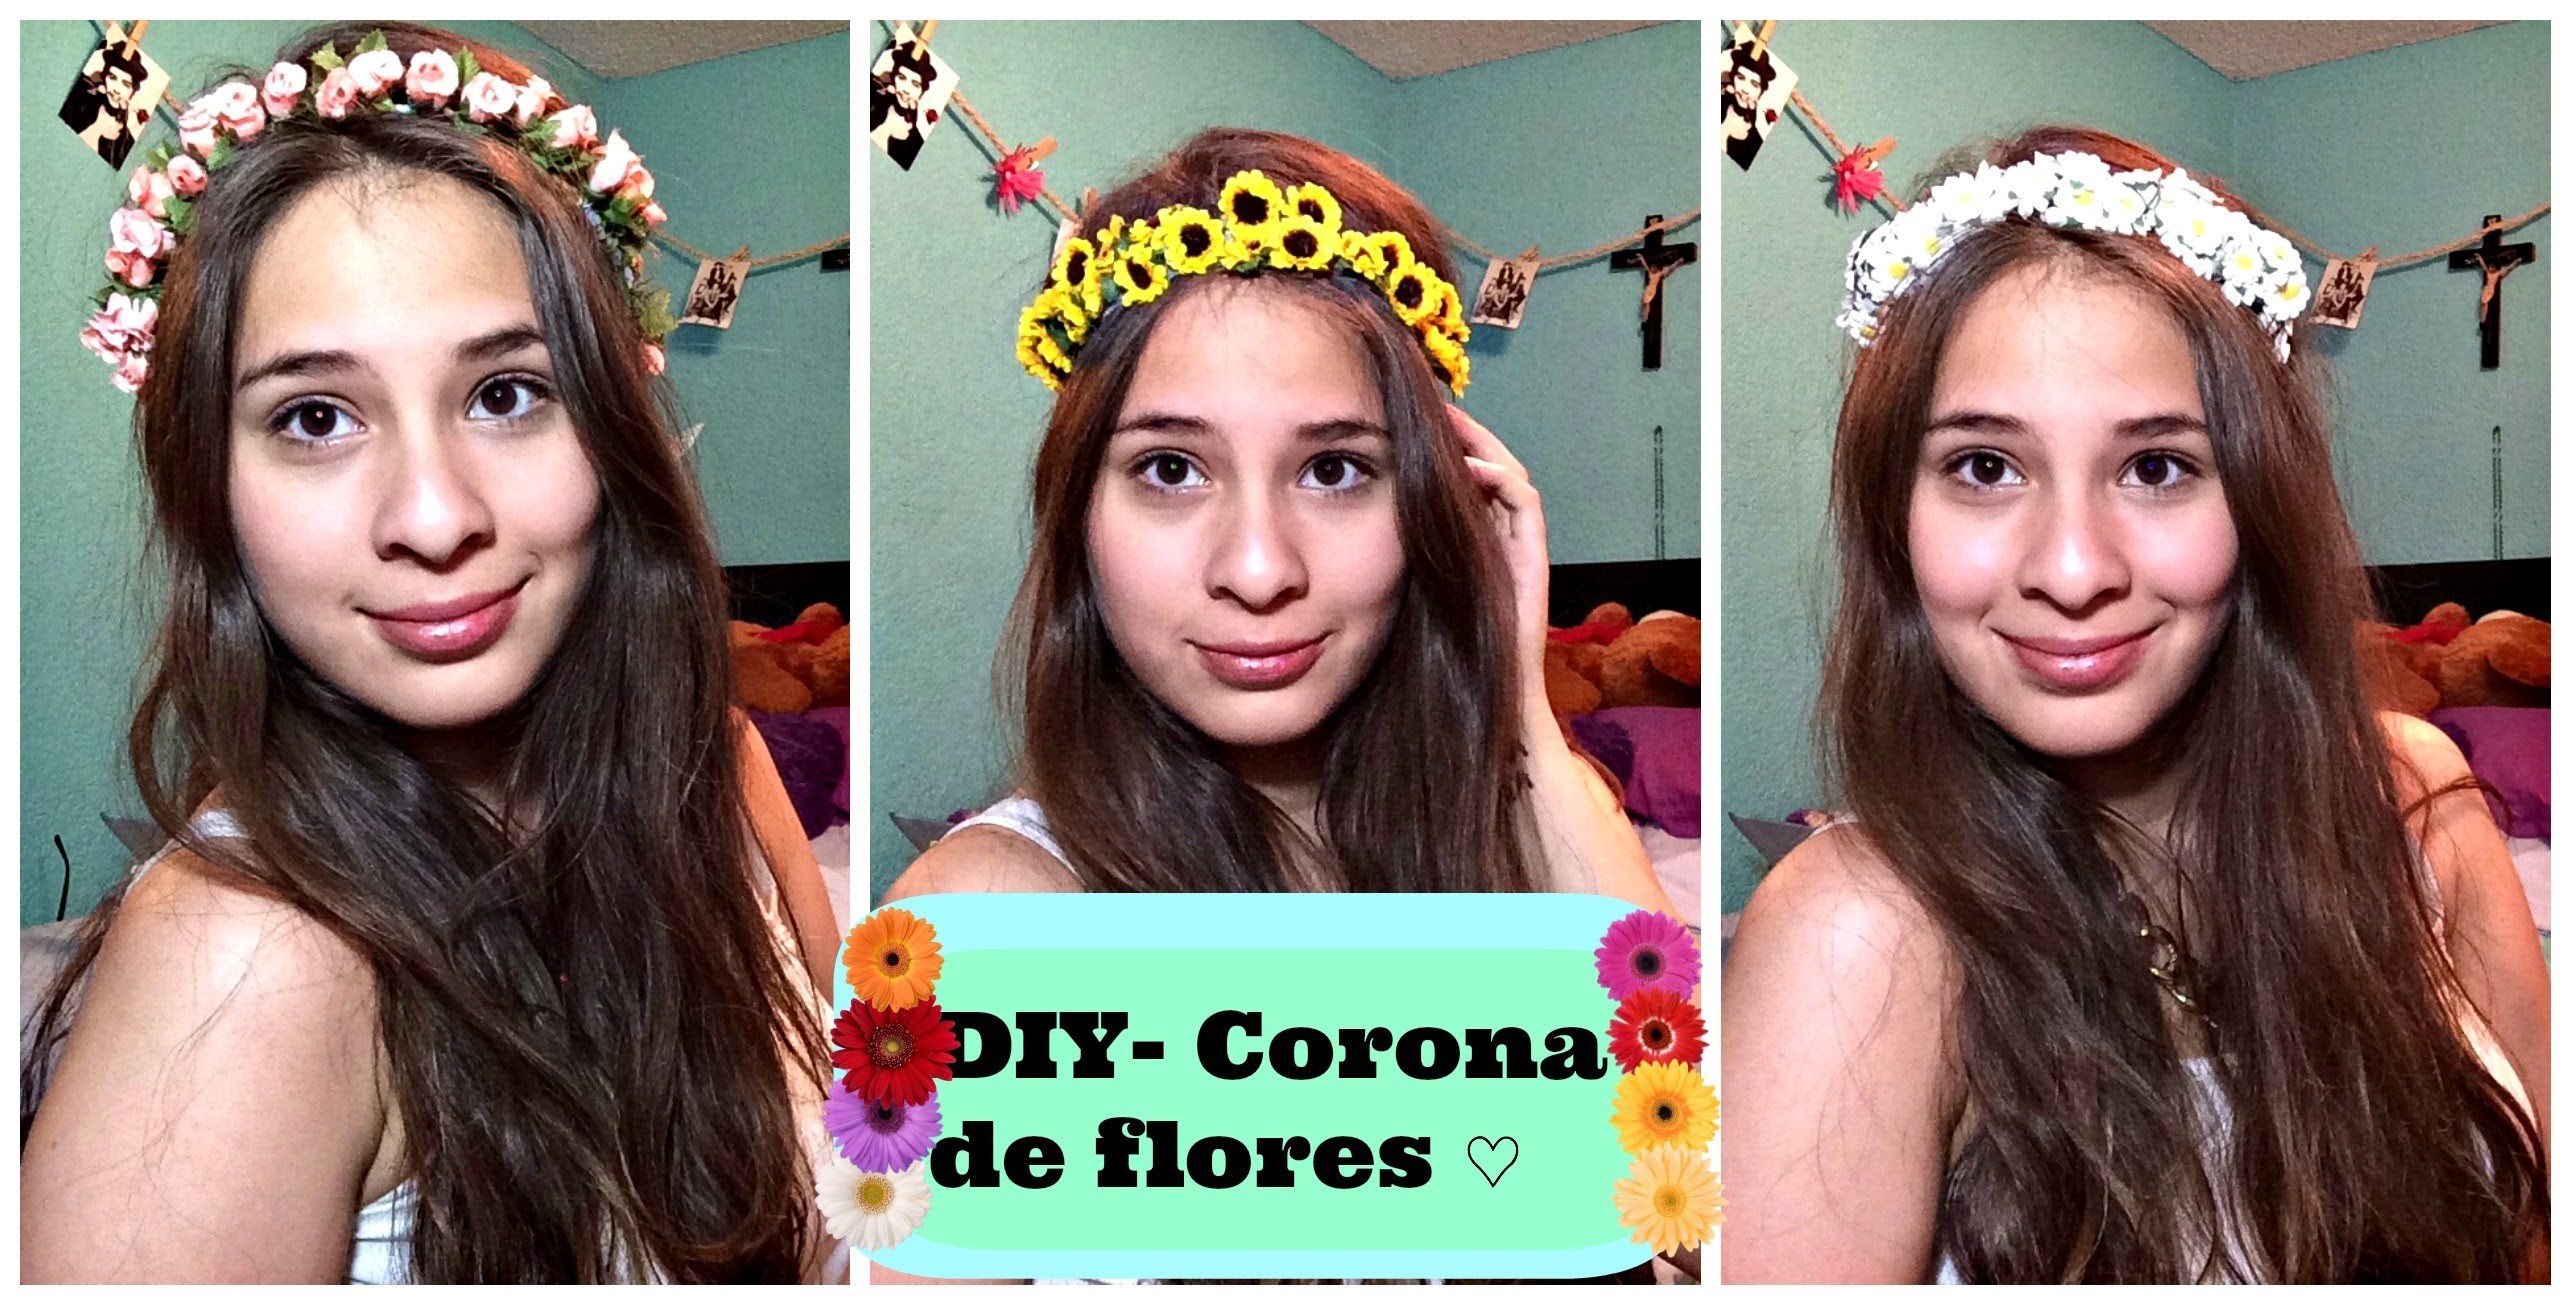 DIY - Corona de Flores + 1 año en Youtube ♡♡